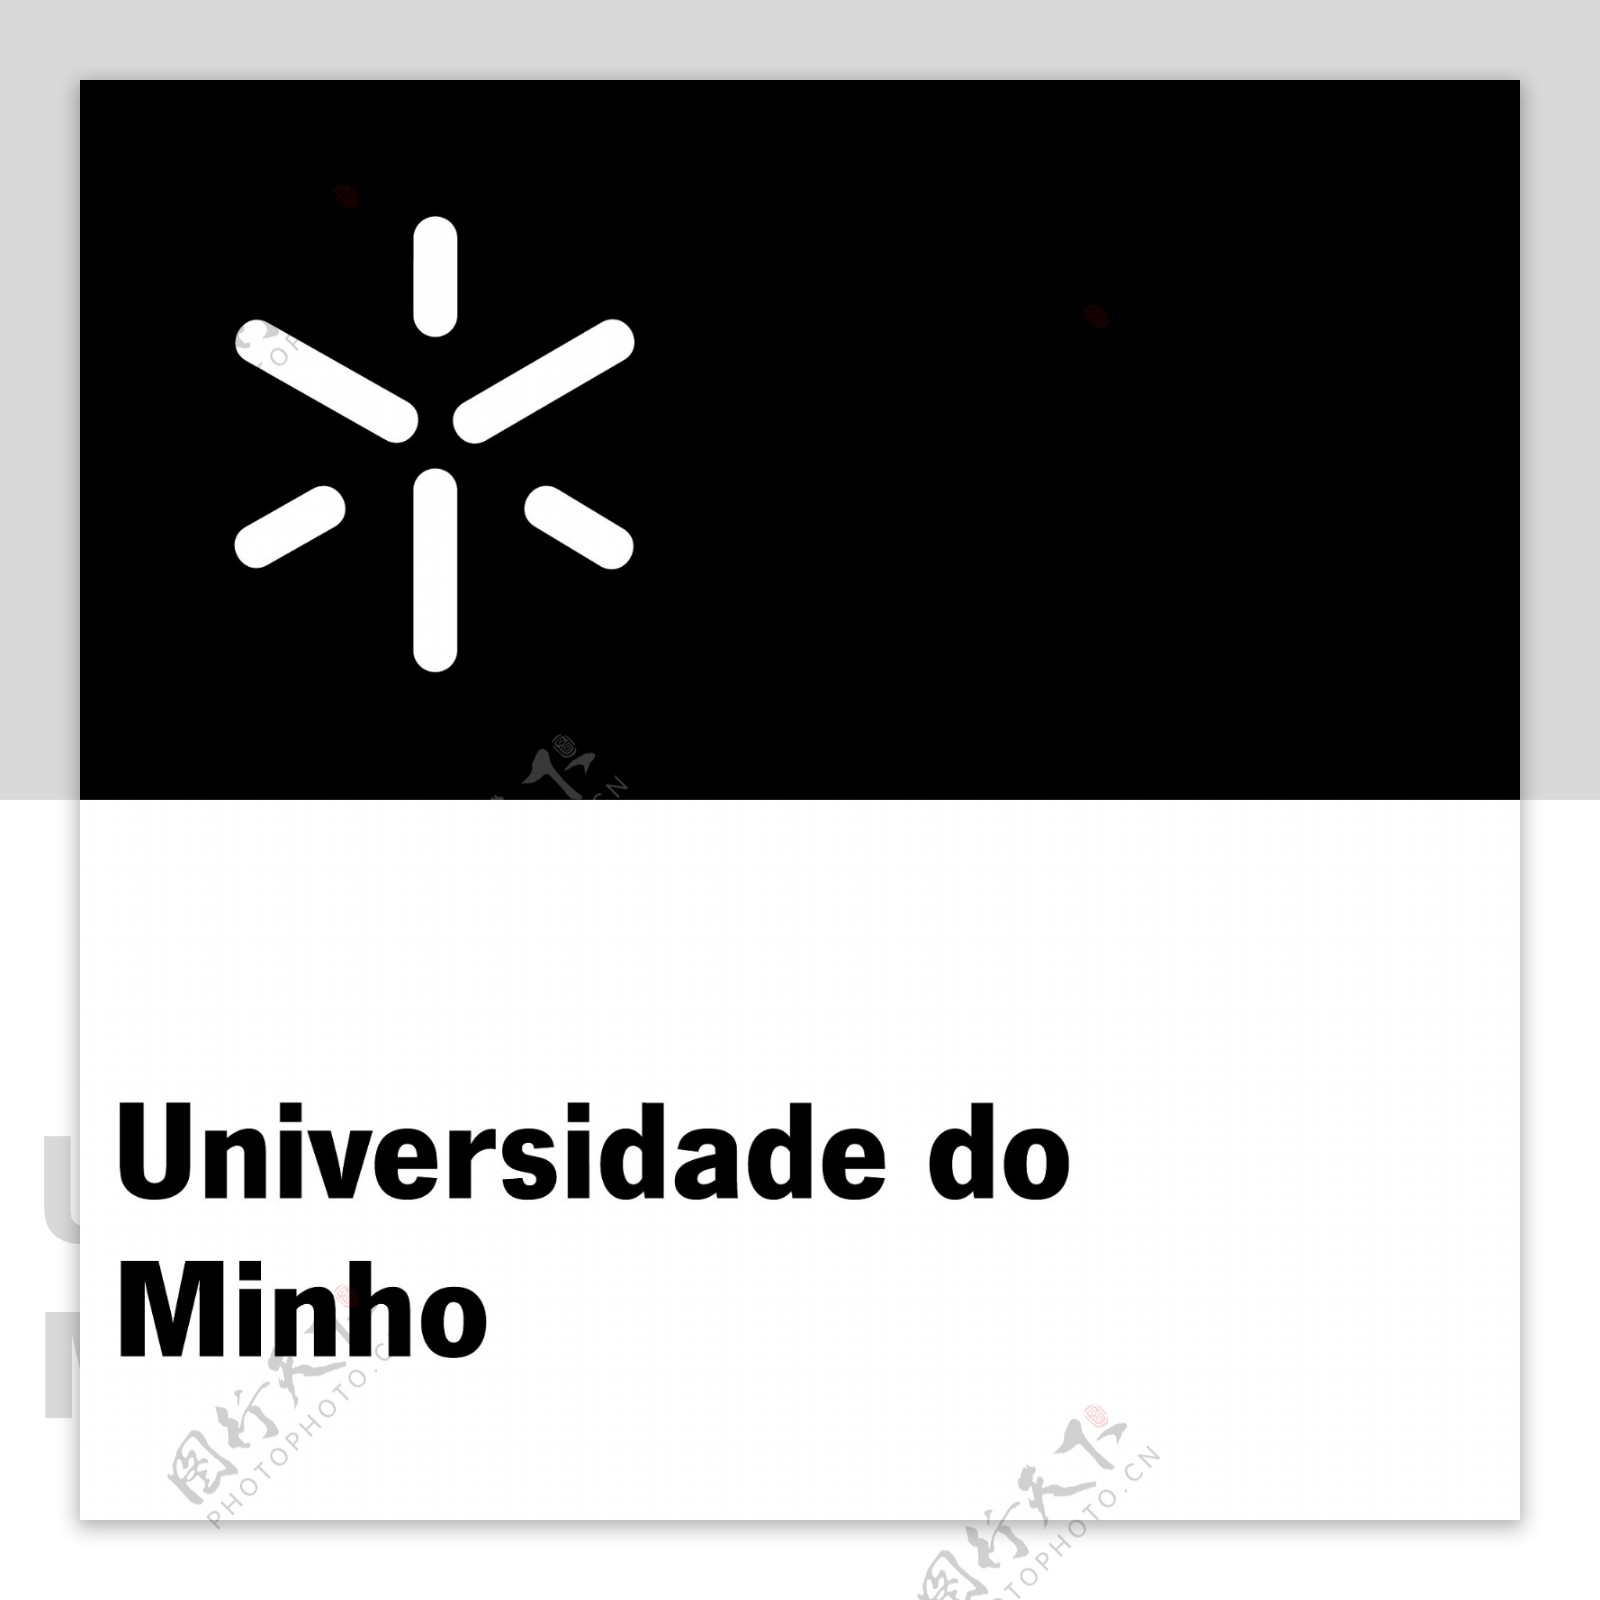 UniversidadedoMinhologo设计欣赏UniversidadedoMinho世界名校标志下载标志设计欣赏